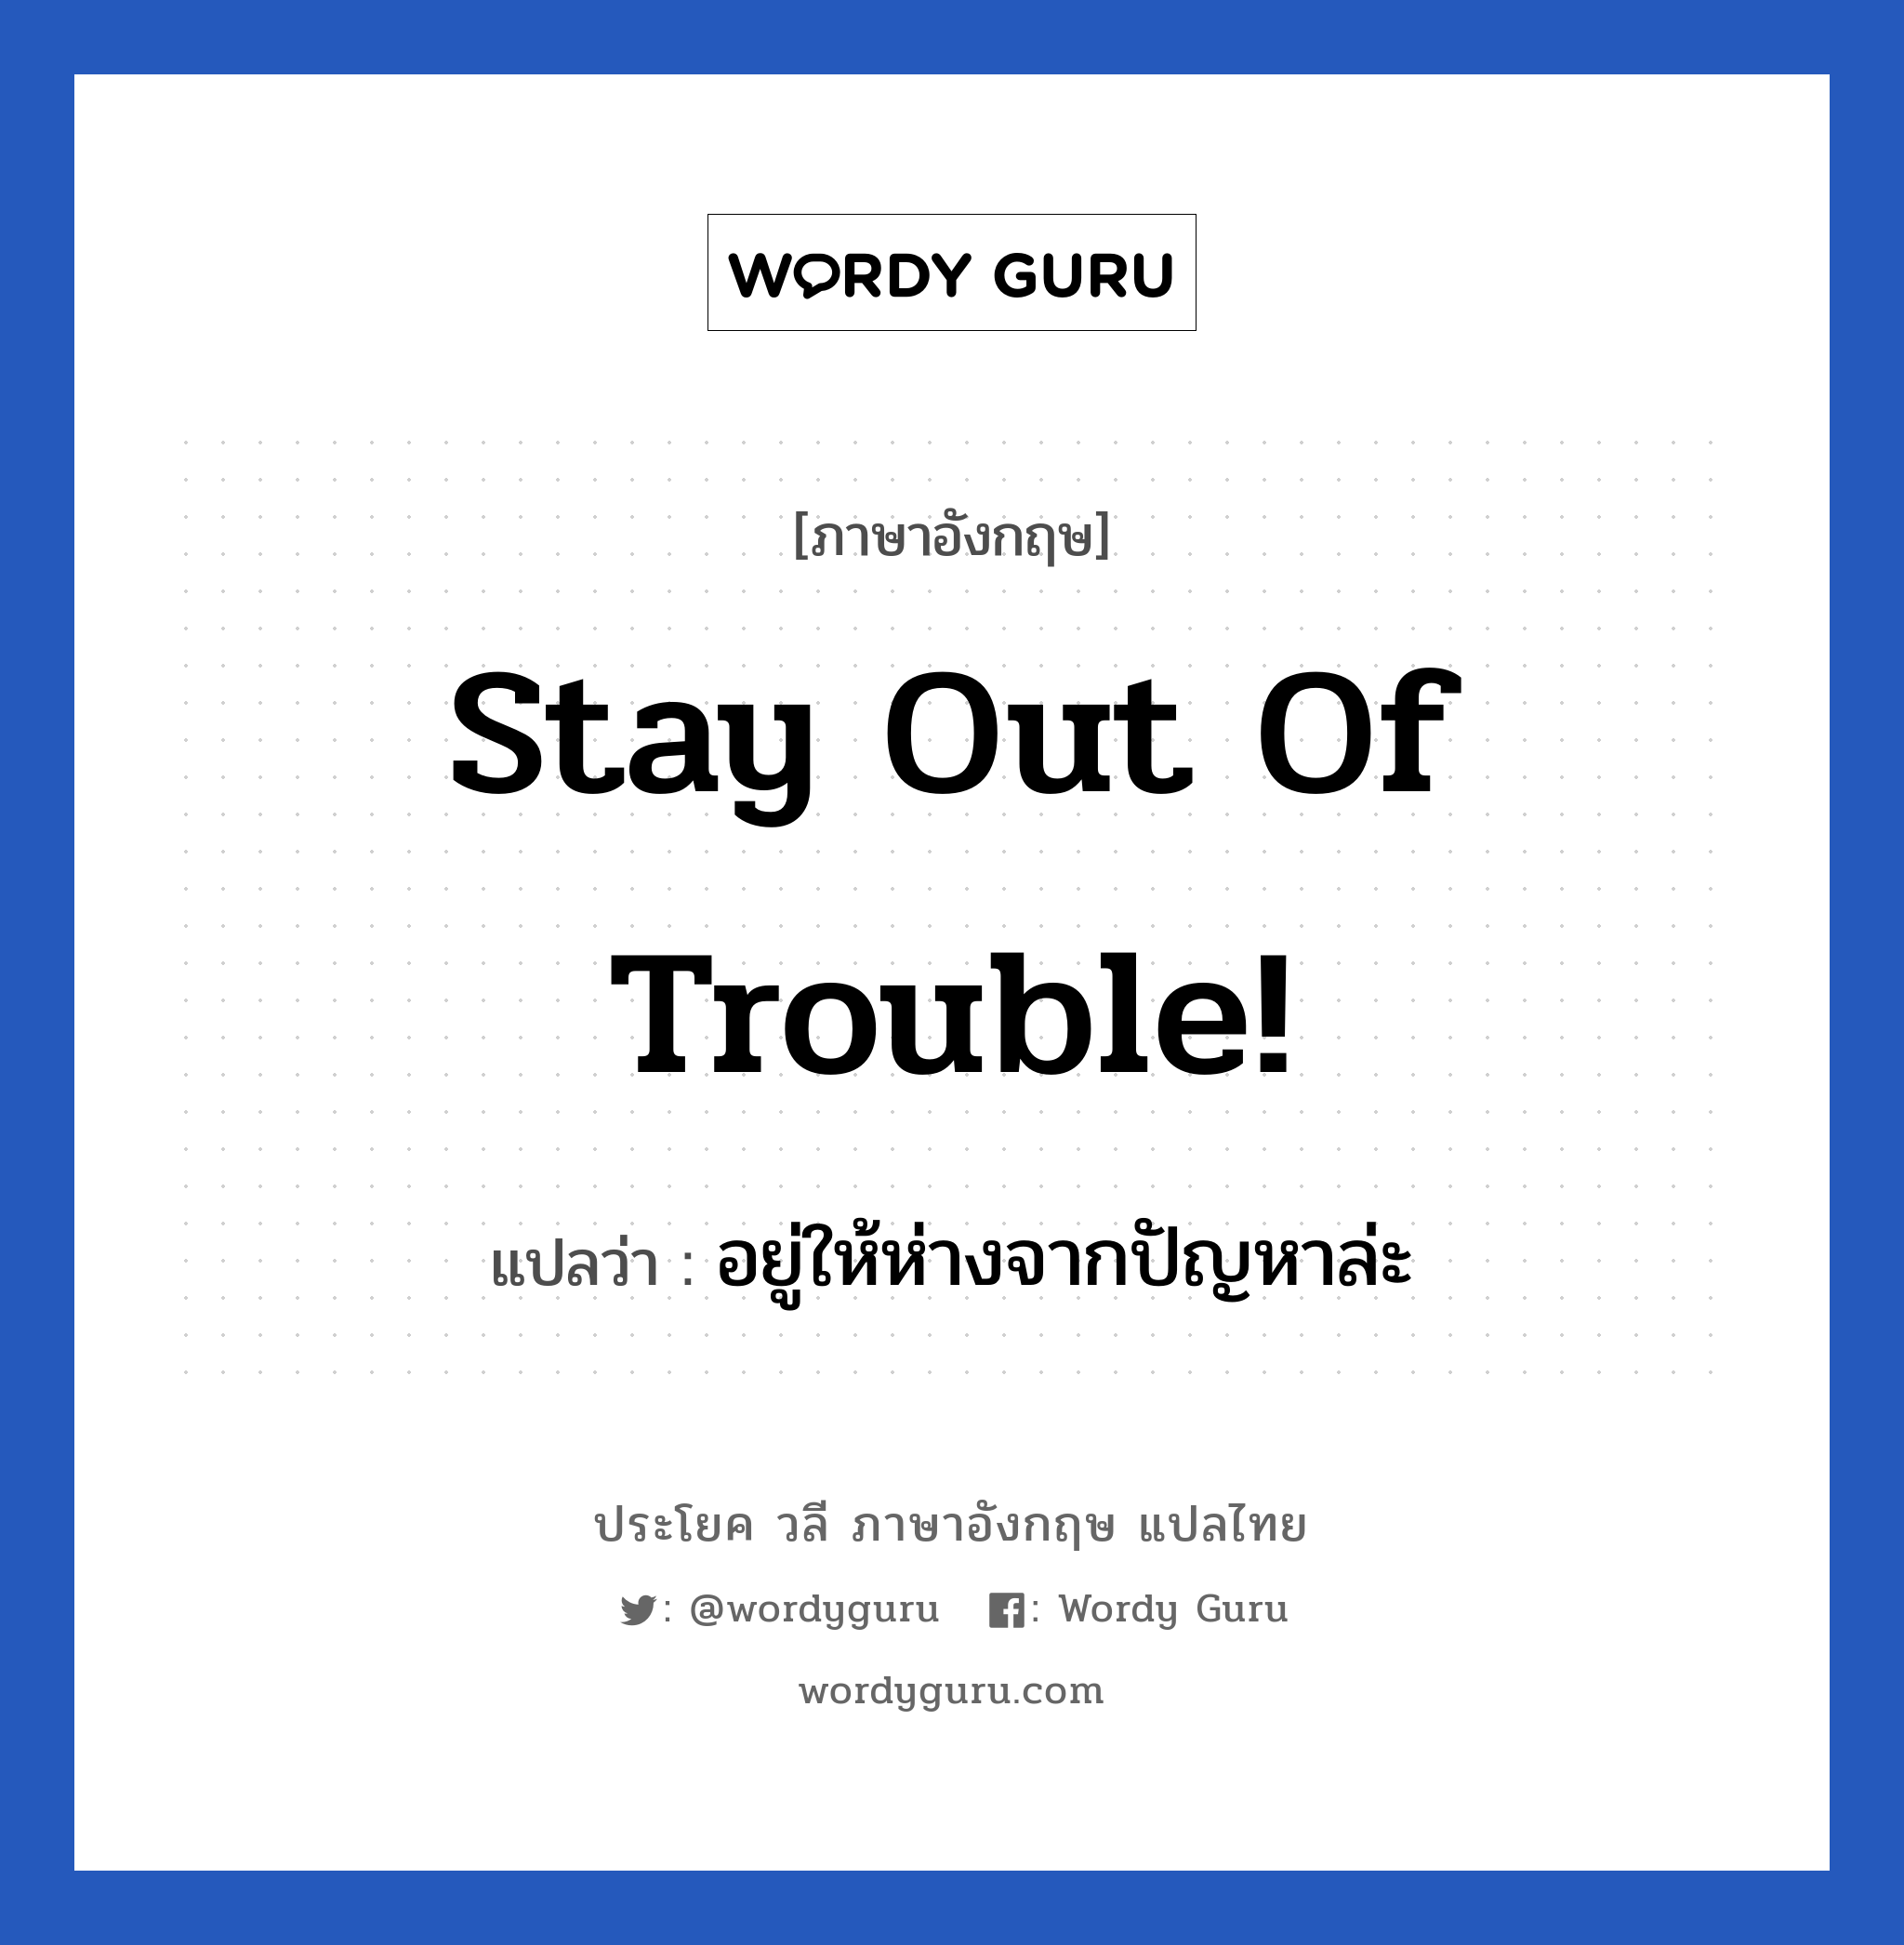 อยู่ให้ห่างจากปัญหาล่ะ ภาษาอังกฤษ?, วลีภาษาอังกฤษ อยู่ให้ห่างจากปัญหาล่ะ แปลว่า Stay out of trouble! หมวด เป็นห่วง